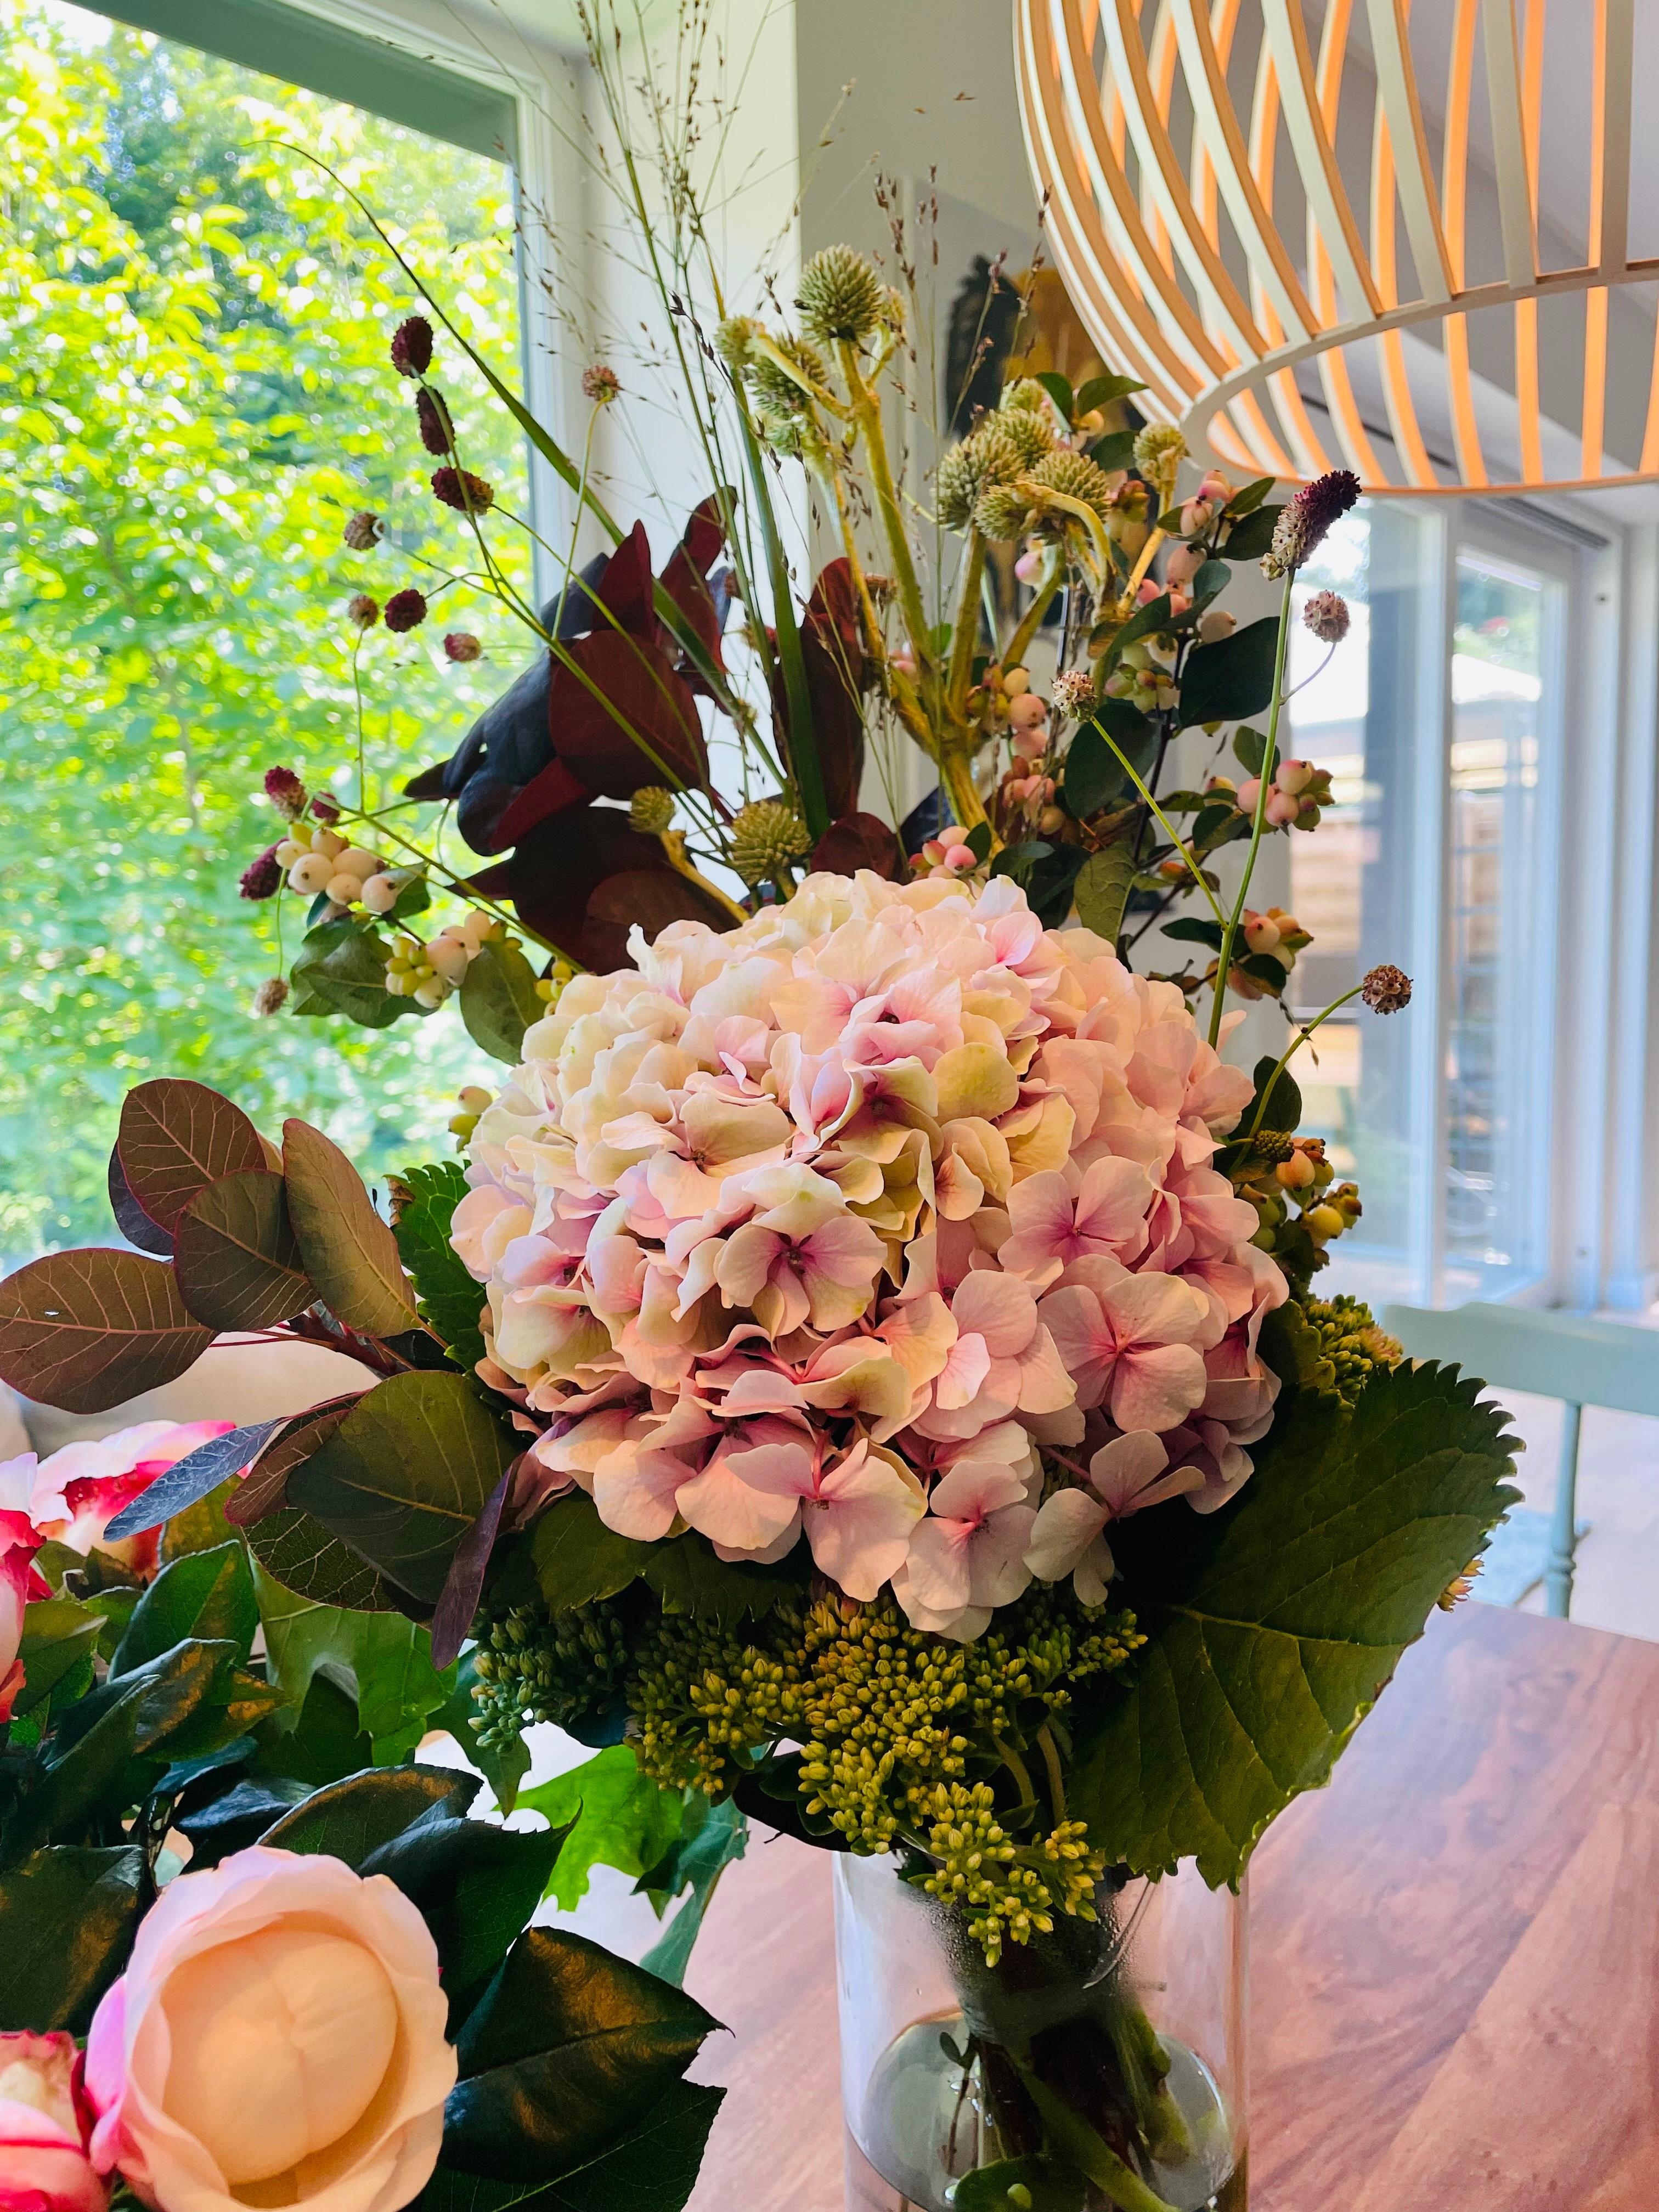 Ich mag #hortensien einfach so gerne 💛 #blumen #esszimmer #licht Welches sind eure Lieblingsblumen?